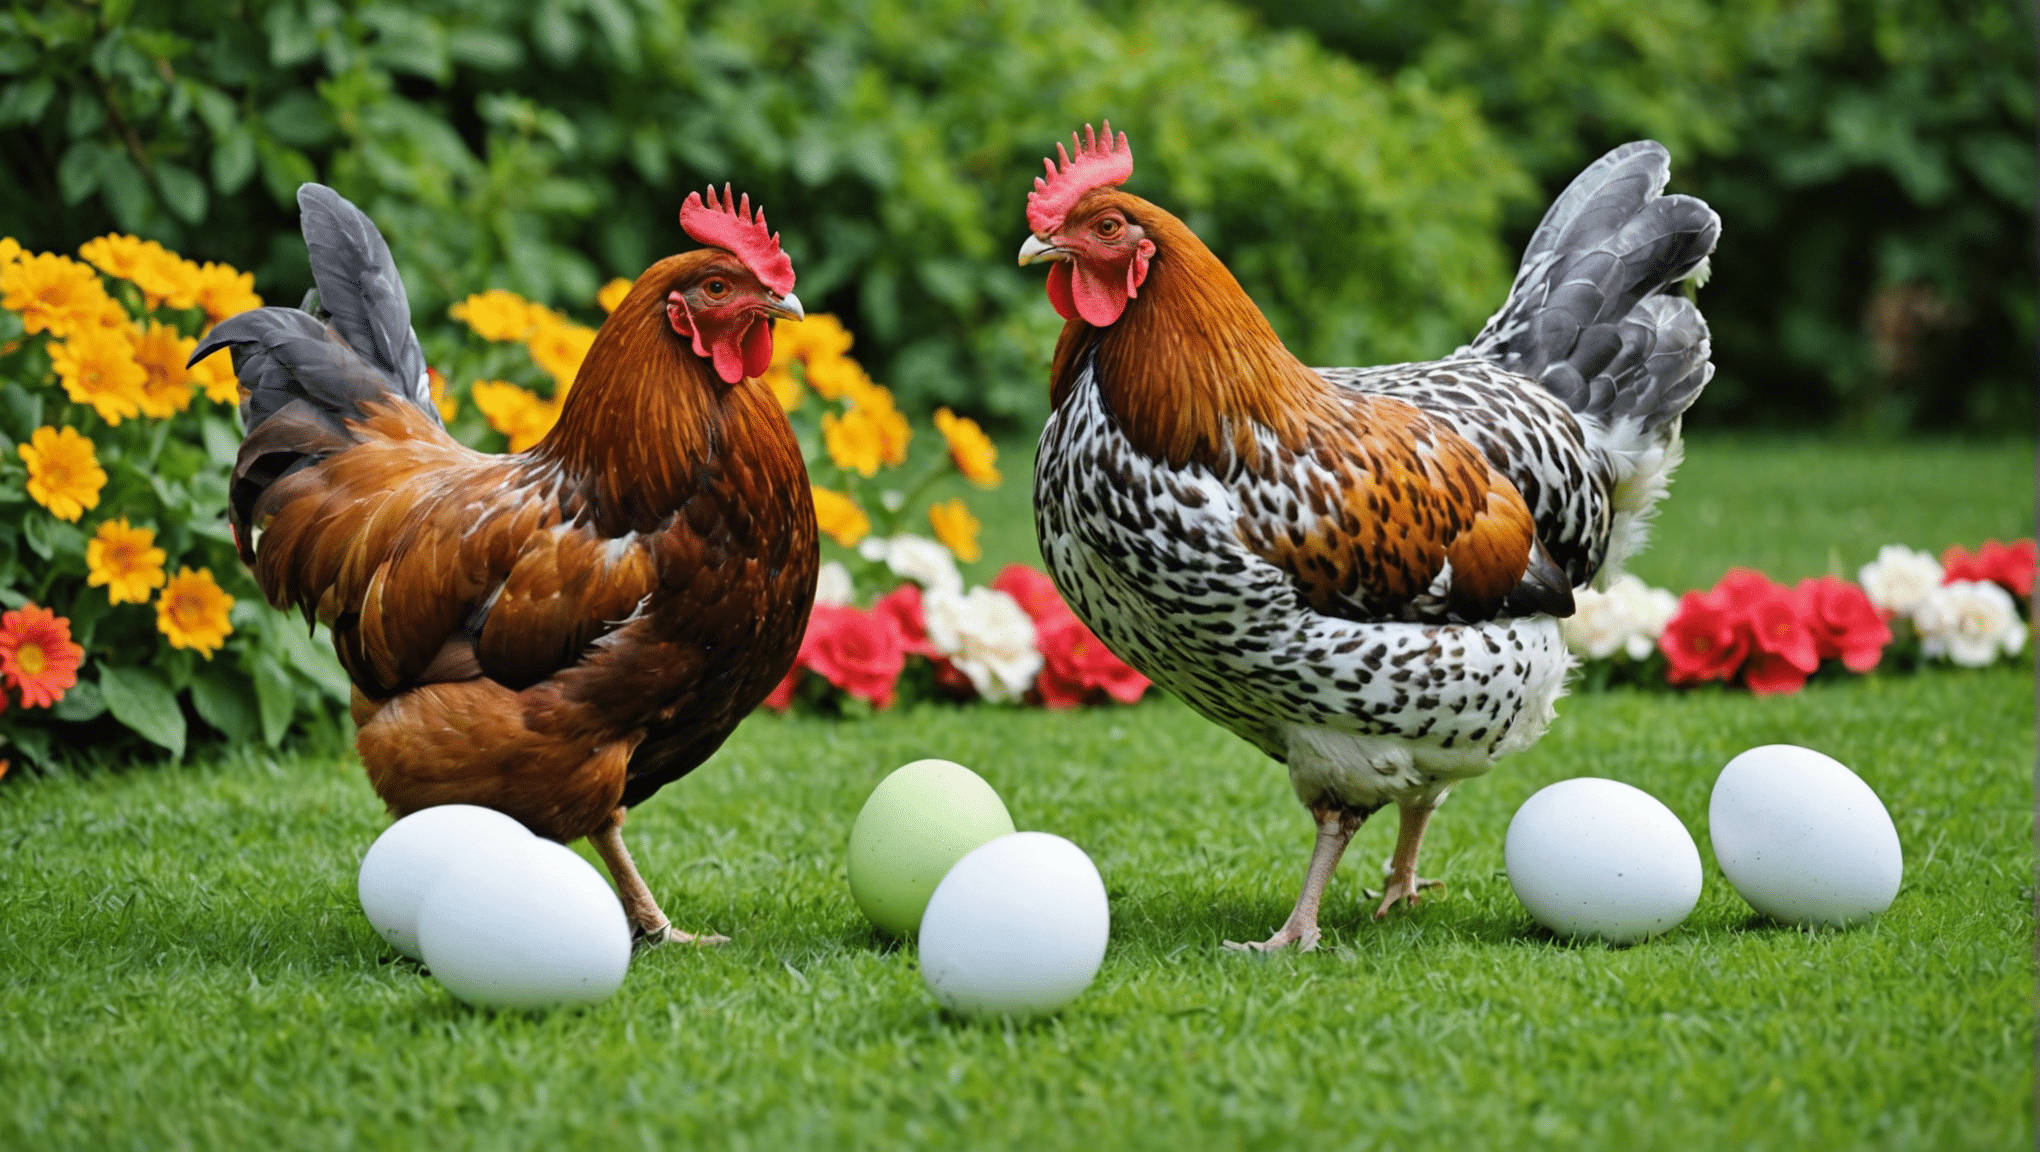 izvedeti več o času odlaganja jajc pri različnih pasmah piščancev in njihovih edinstvenih vzorcih pri proizvodnji jajc.